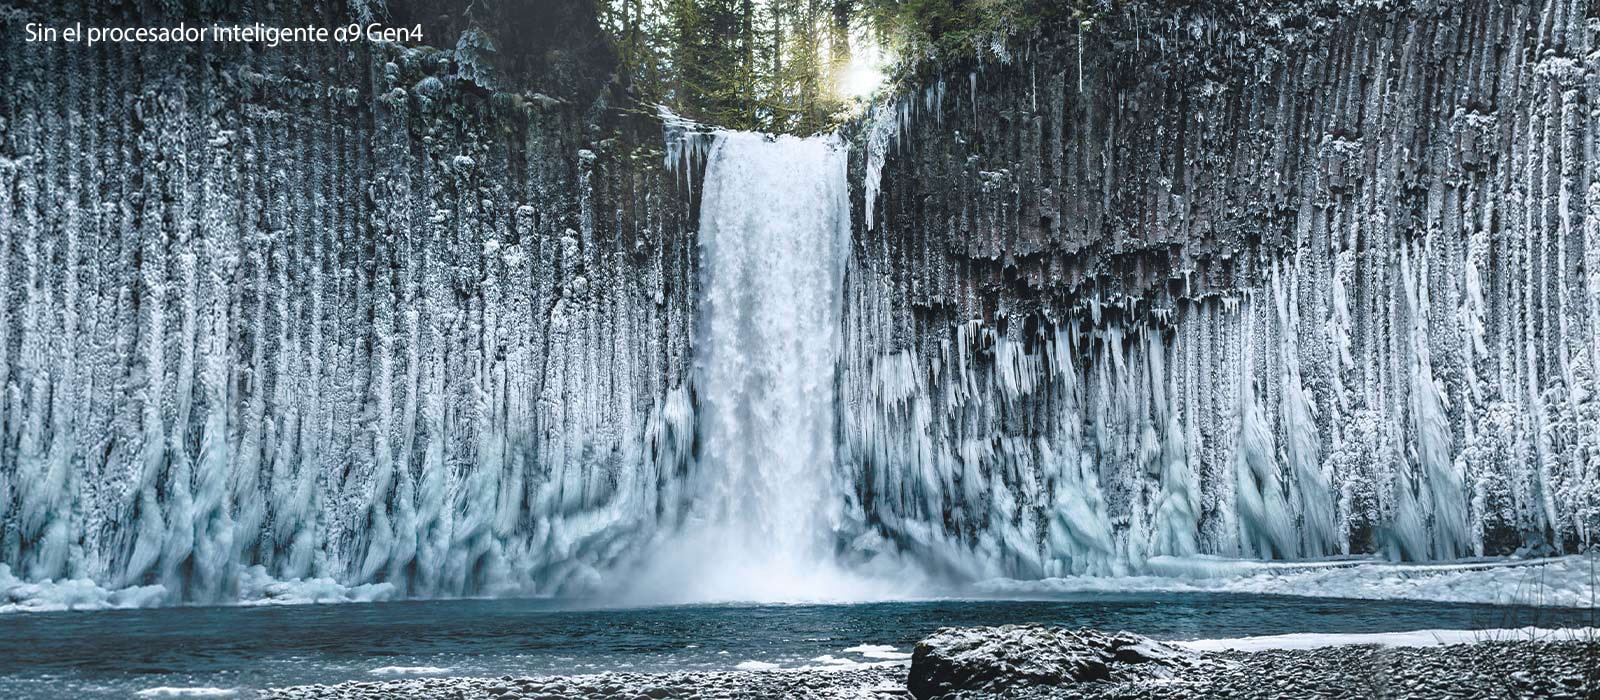 Comparación de la calidad de imagen de una cascada congelada en un bosque.